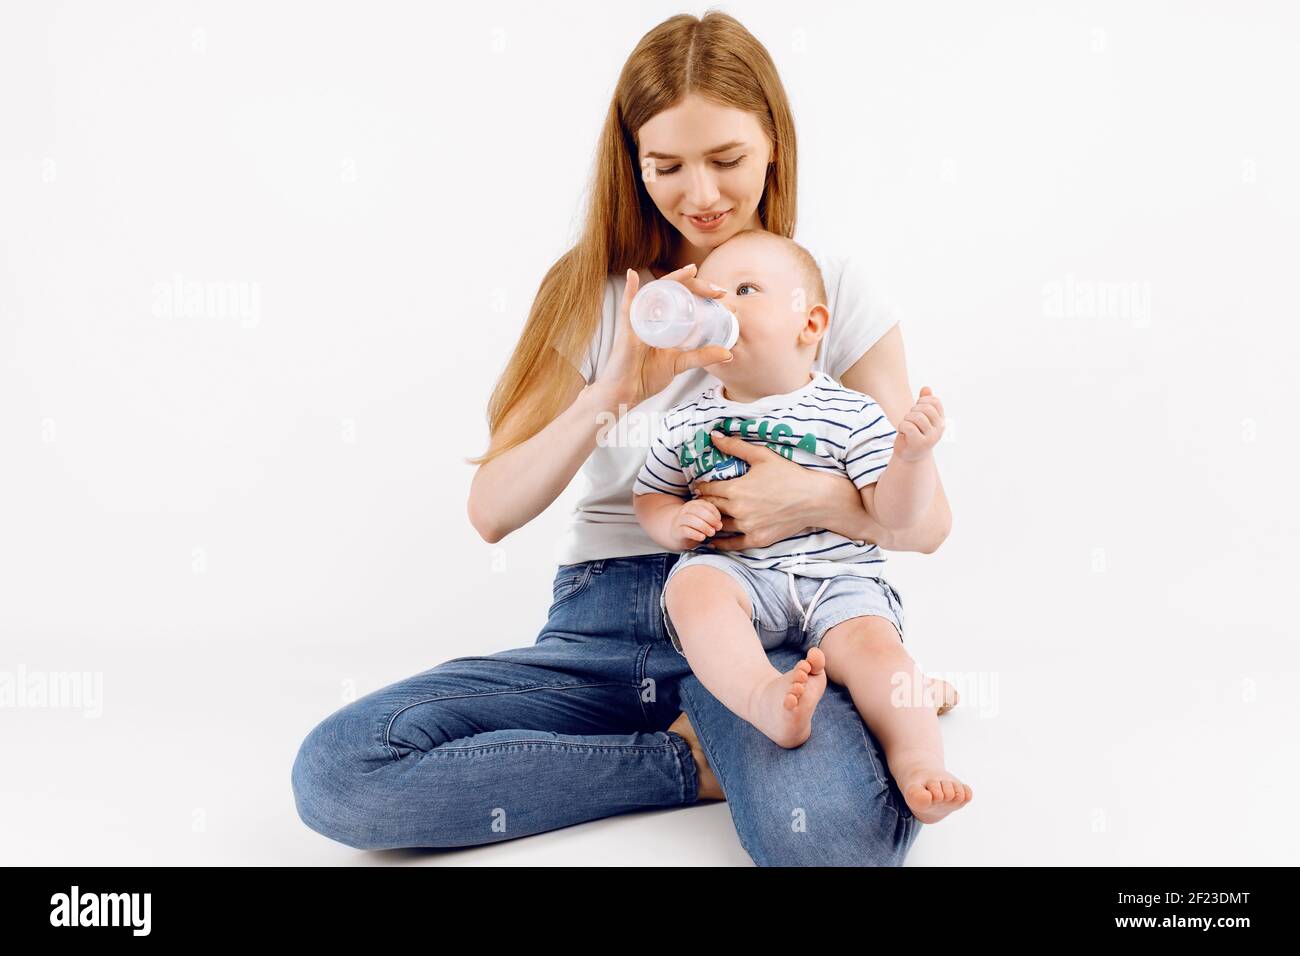 Felice madre sorridente che alimenta il suo bambino da un biberon, su sfondo bianco isolato Foto Stock